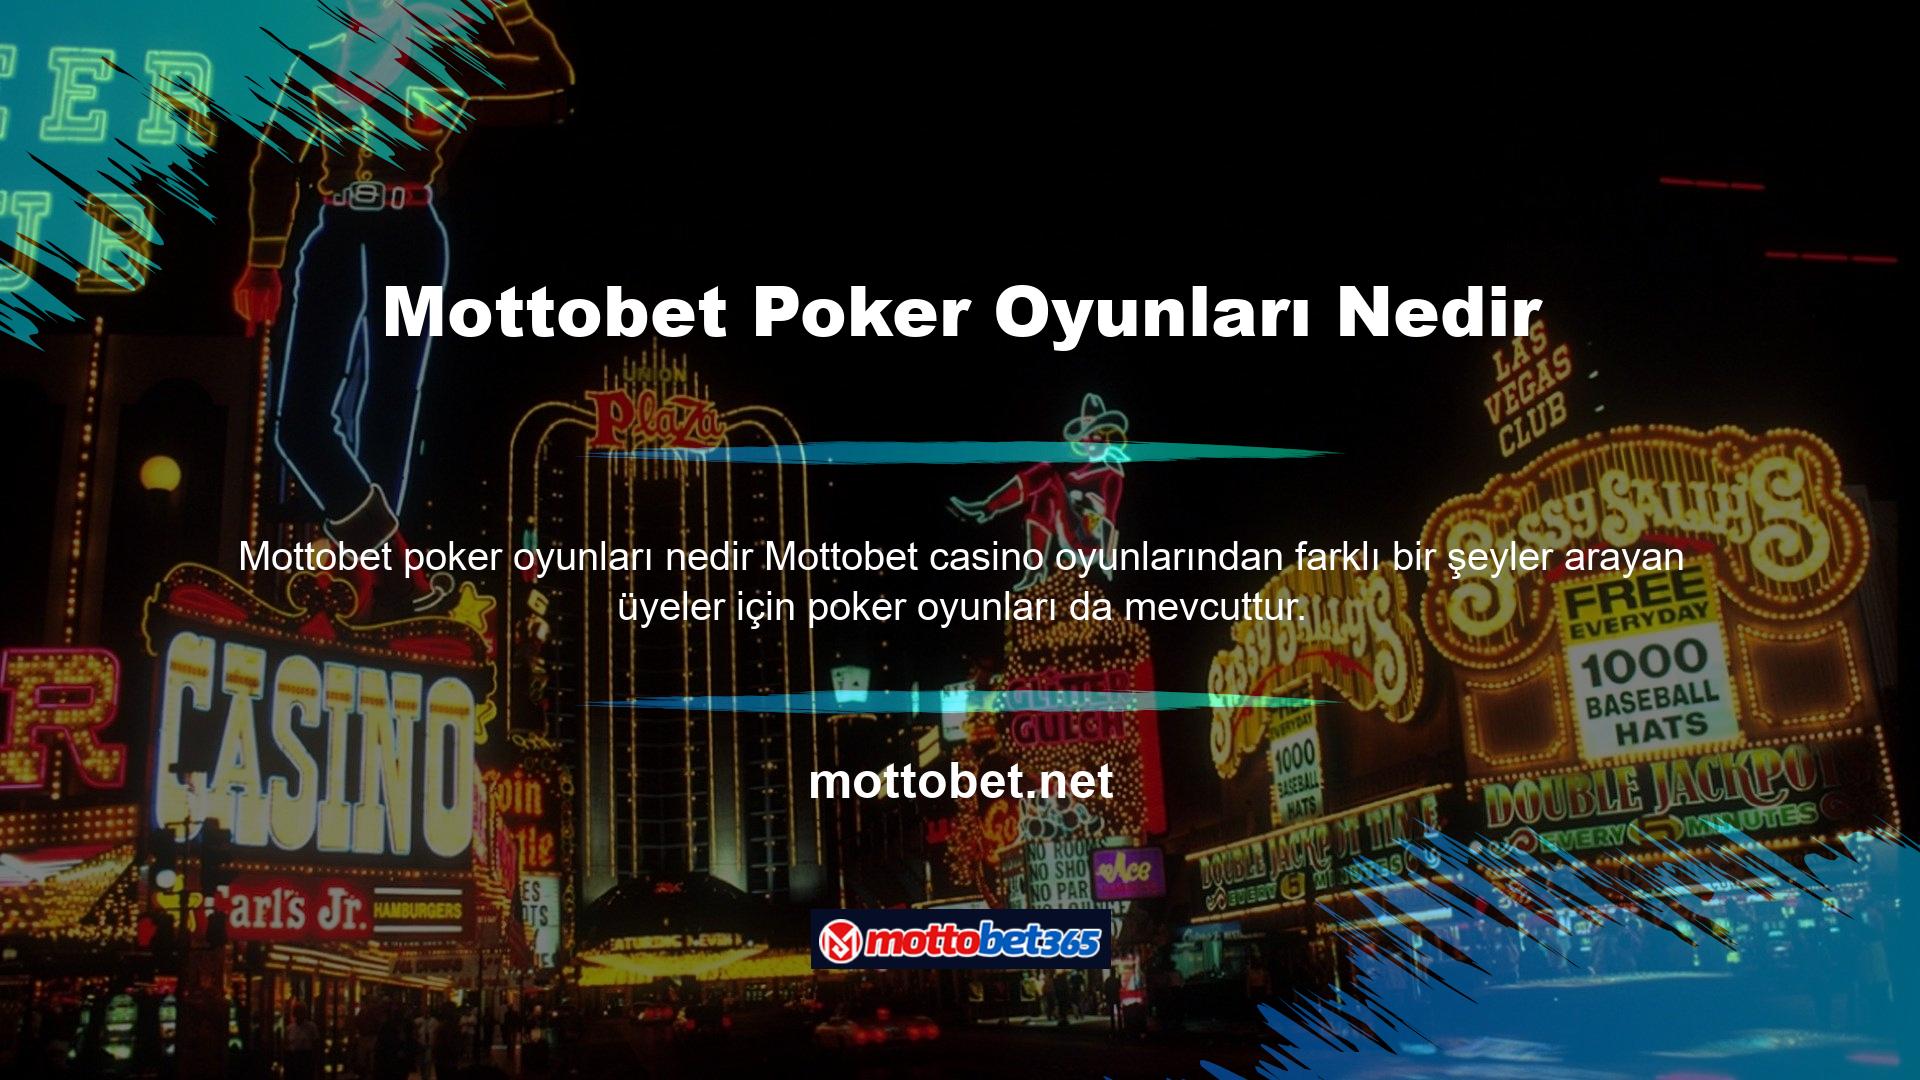 Mottobet, poker bölümünde yedi farklı seçenek sunarak bu ve diğer temaların birçok varyasyonunu sunuyor